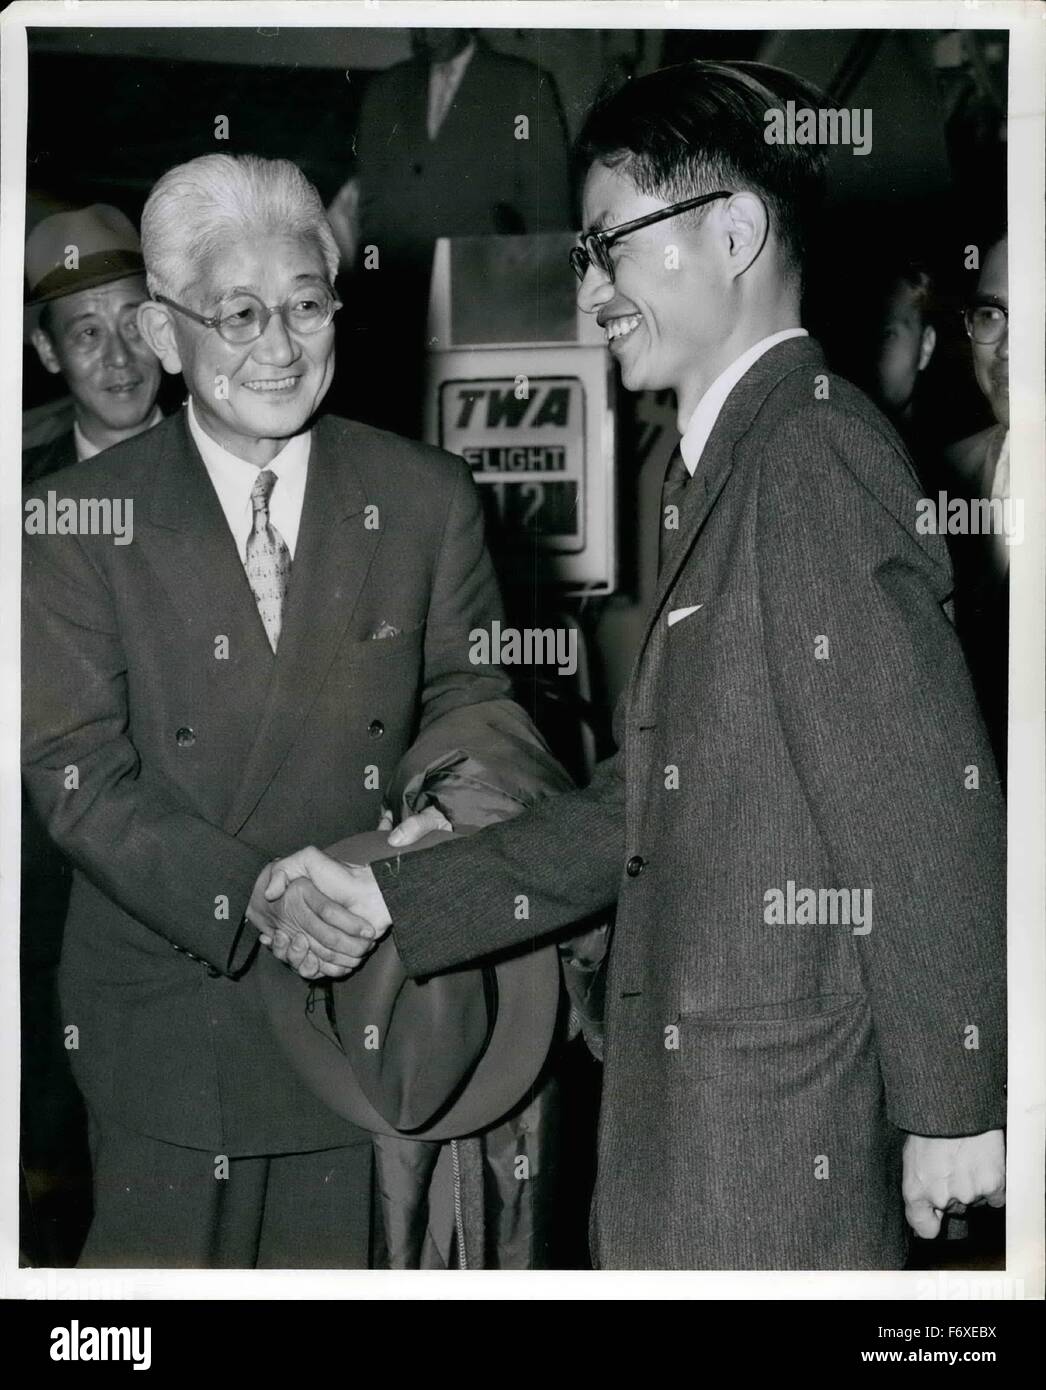 1952 - L'aéroport Idlewild, N.Y., 16 septembre -- le ministre des Affaires étrangères du Japon, Aiichiro Fujiyama, gauche, est accueilli par son fils, Kakuichiro, 29, un étudiant au MIT, après son arrivée à bord de TWA de San Francisco. M. Fujiyama, un ancien homme d'affaires, est en ville pour la session de l'assemblée générale des Nations unies où il fera campagne pour un siège pour le Japon sur le Conseil de sécurité quelques dignitabies japonais étaient aussi présents pour accueillir le ministre des affaires étrangères, y compris : l'Ambassadeur Koto Matsudaira, représentant permanent aux Nations Unies, Toru Hagiwara, ambassadeur au Canada et Takezo Shimoda, ministre de Banque D'Images